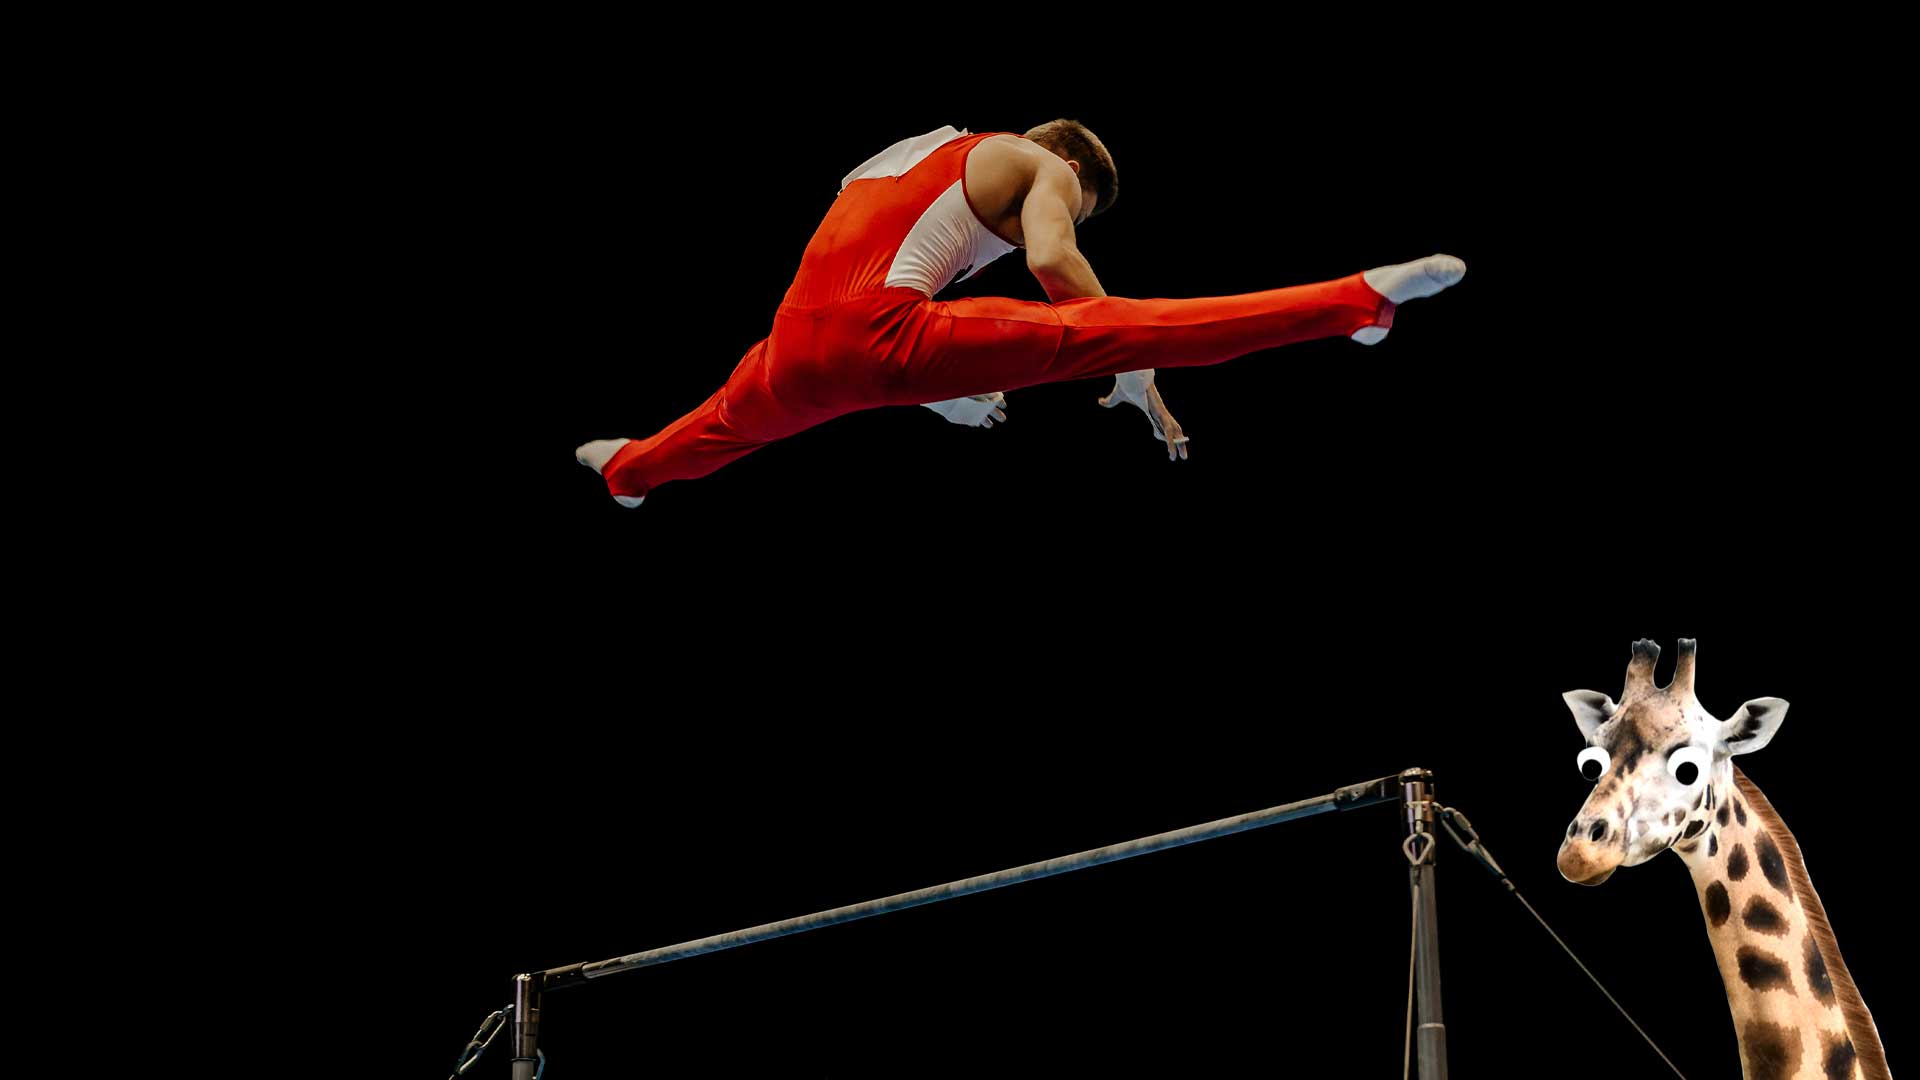 A gymnast on the high bar